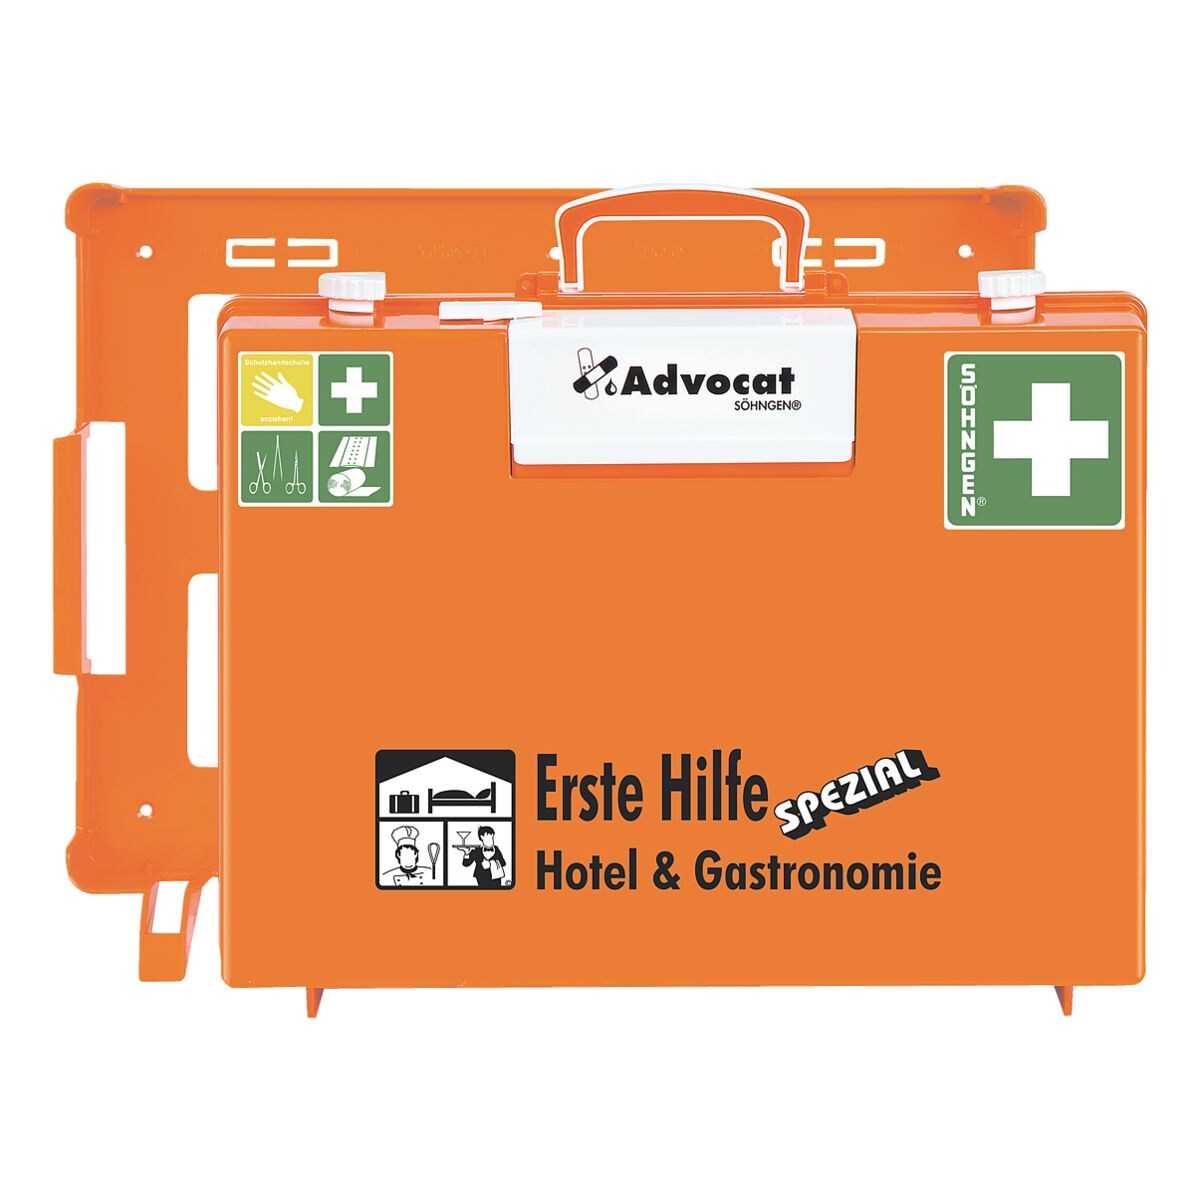 SHNGEN Erste-Hilfe-Koffer Advocat MT-CD Hotel